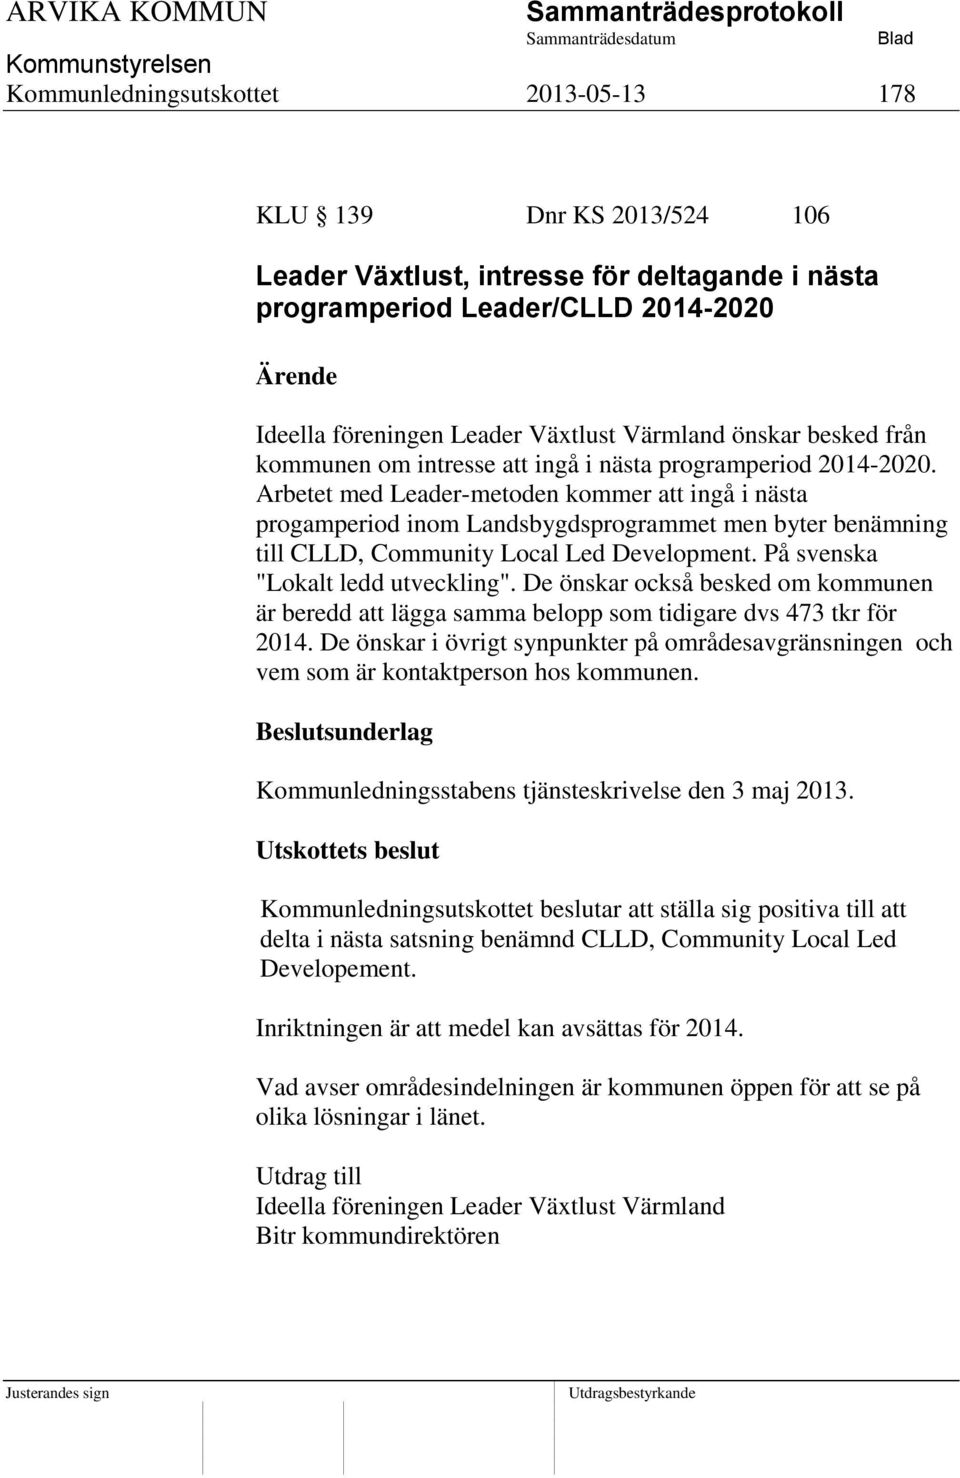 Arbetet med Leader-metoden kommer att ingå i nästa progamperiod inom Landsbygdsprogrammet men byter benämning till CLLD, Community Local Led Development. På svenska "Lokalt ledd utveckling".